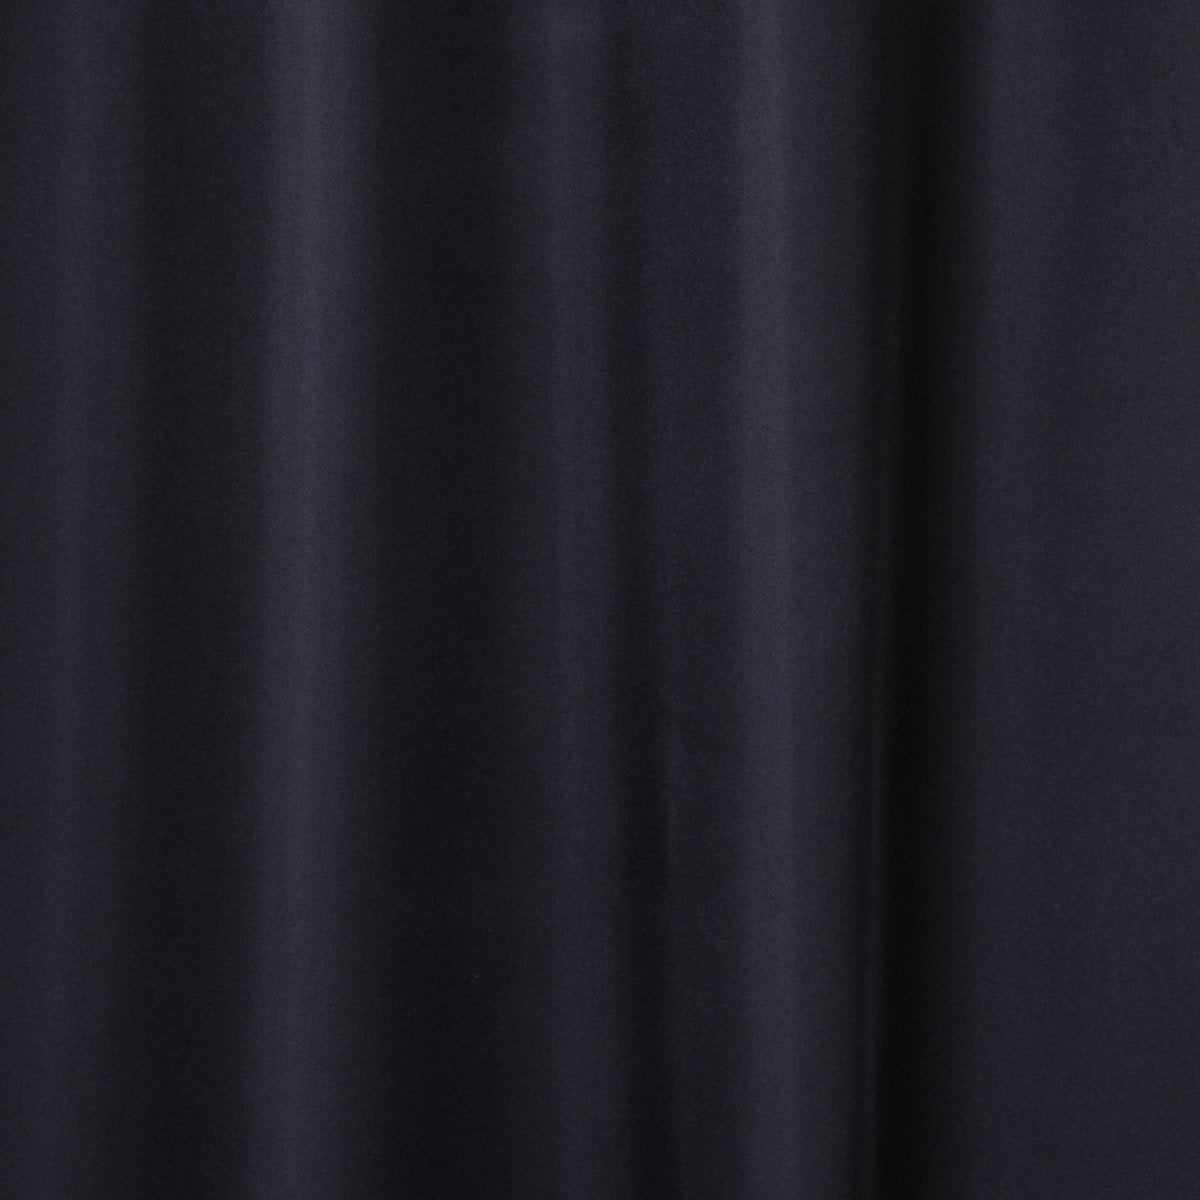 Atmosphera Isolerende Zwart gordijn met 140 x 260 cm - gordijn raambekleding - gordijnen kant en klaar met haakjes ringen